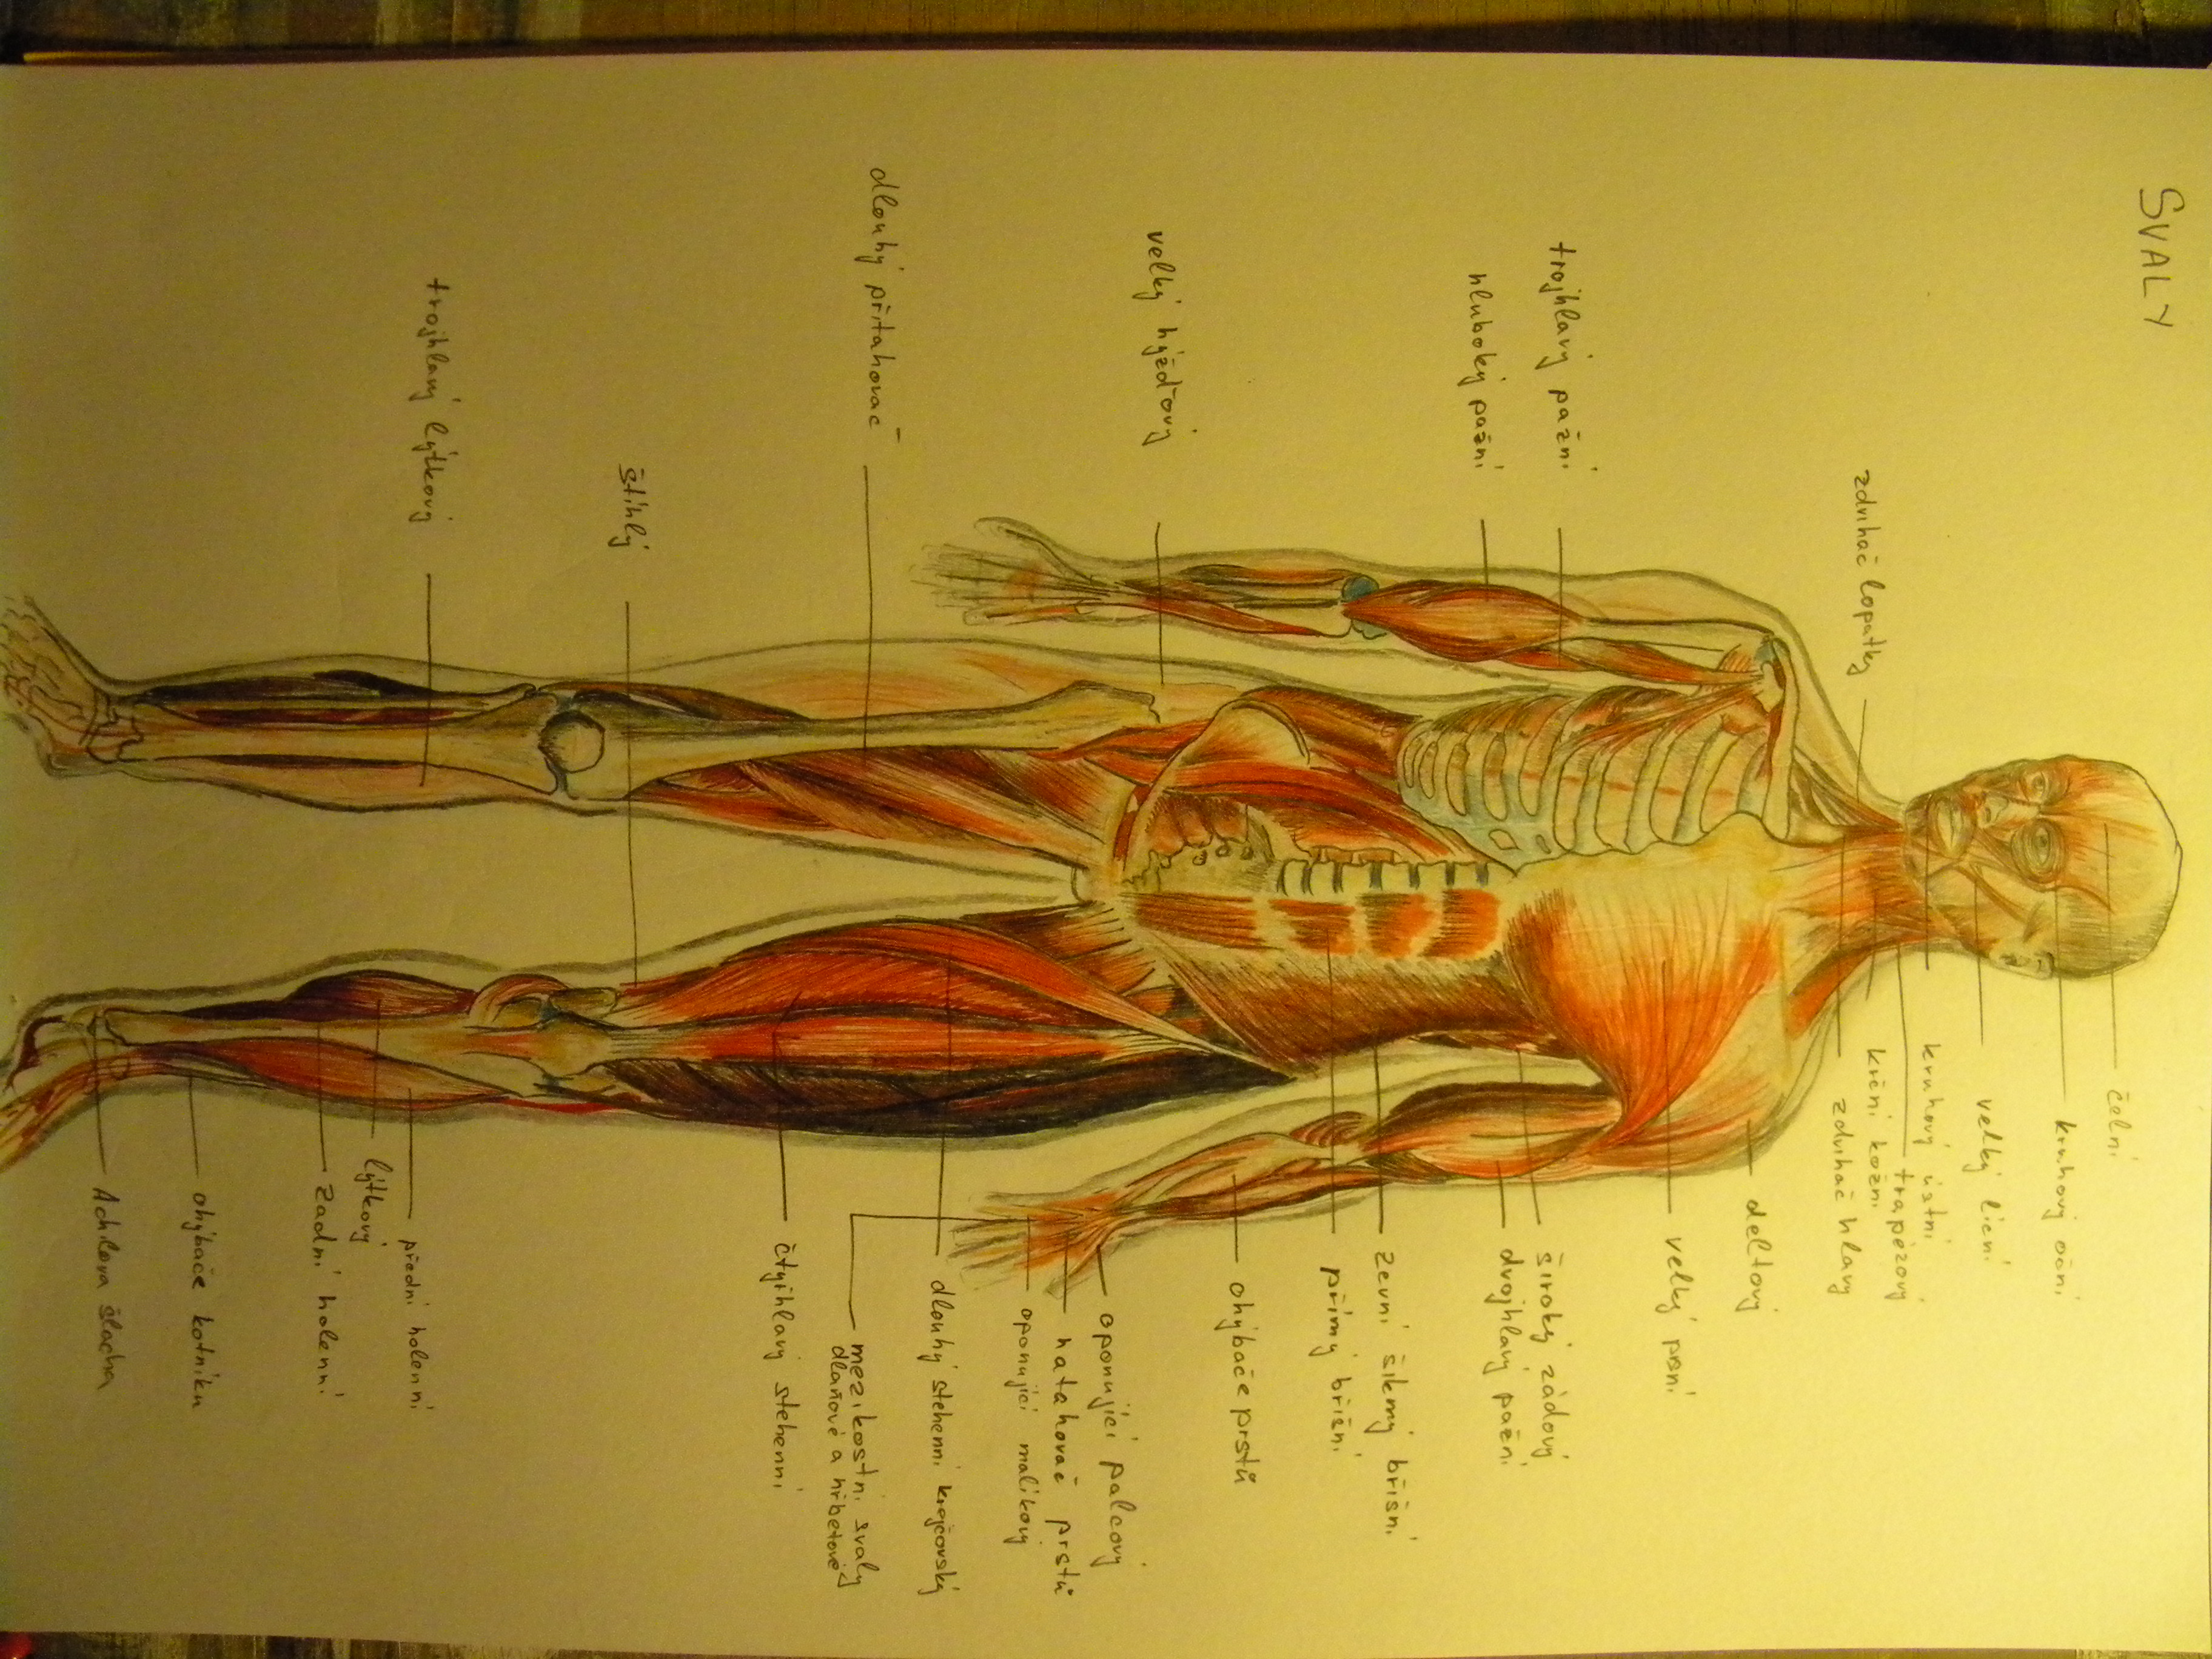 náčrt anatomie člověka svaly tužka a pastelka na čtvrtce